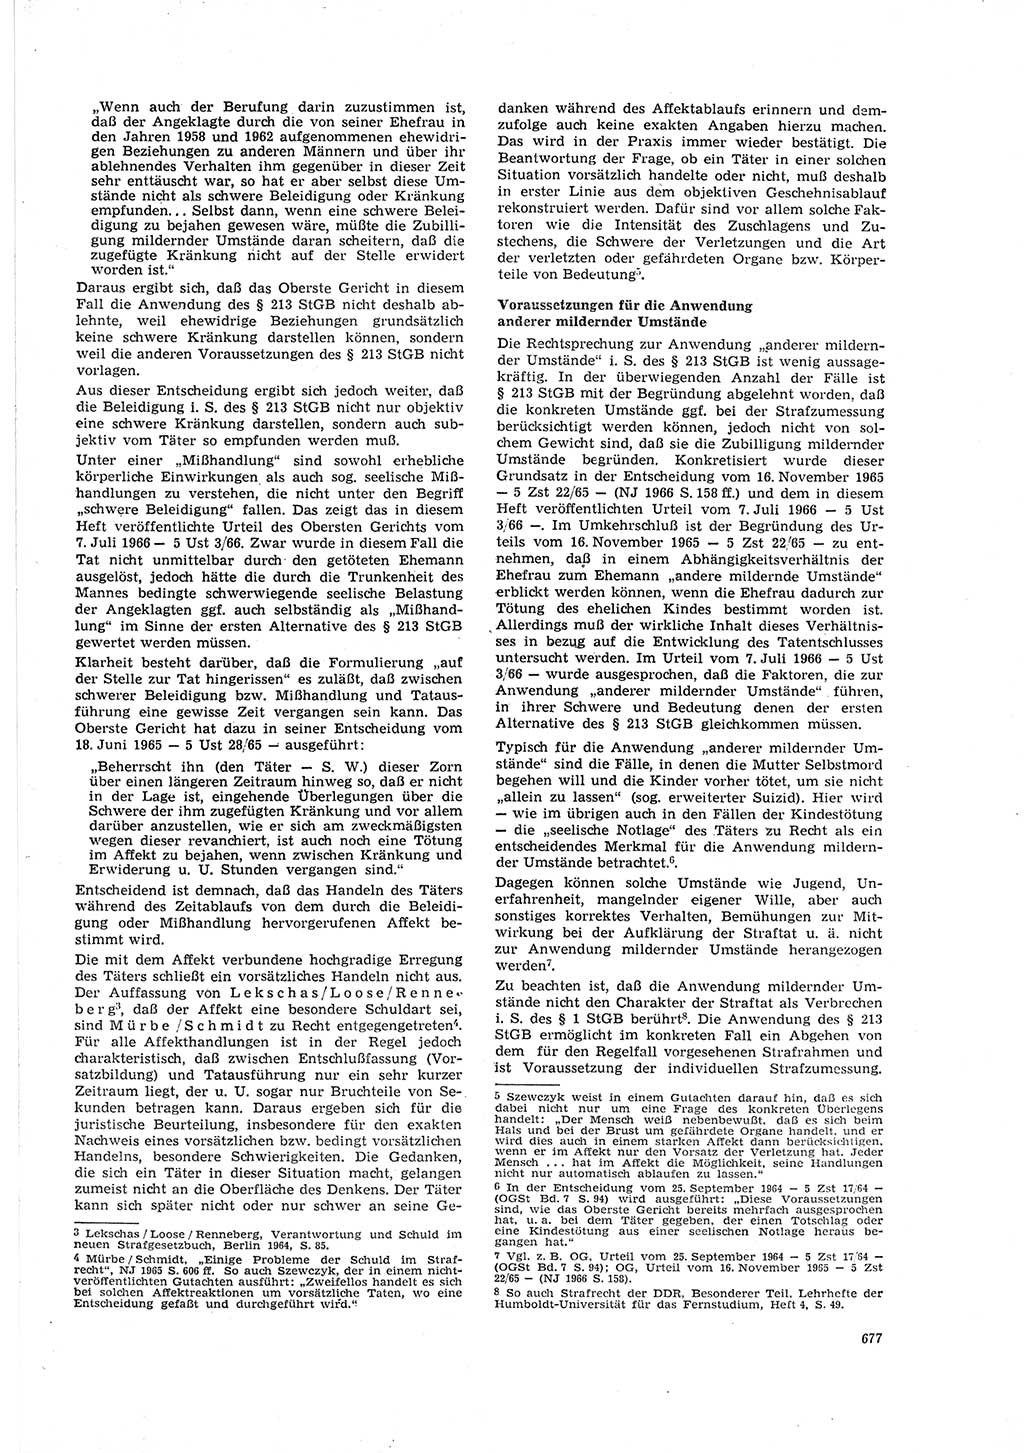 Neue Justiz (NJ), Zeitschrift für Recht und Rechtswissenschaft [Deutsche Demokratische Republik (DDR)], 20. Jahrgang 1966, Seite 677 (NJ DDR 1966, S. 677)